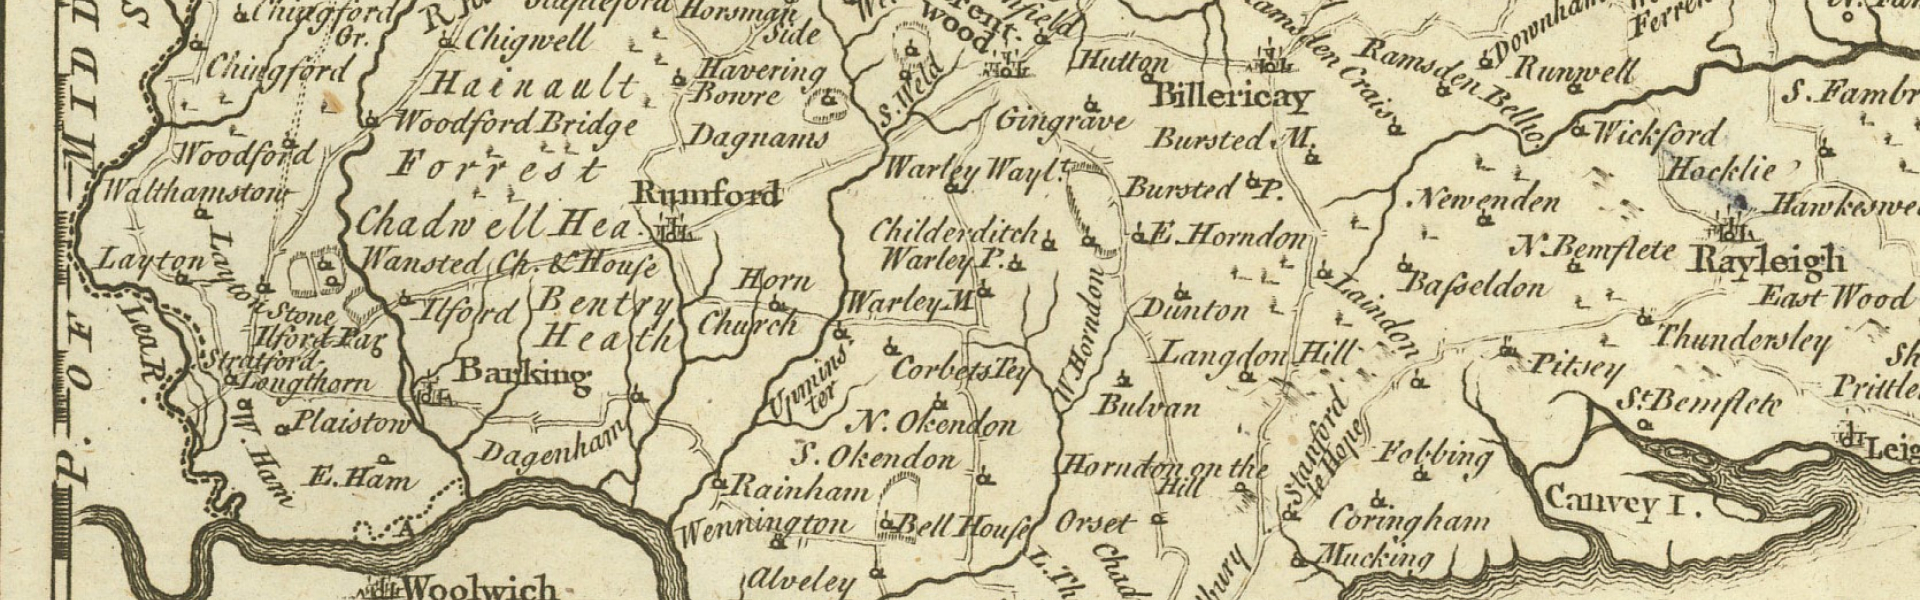 Map of Essex